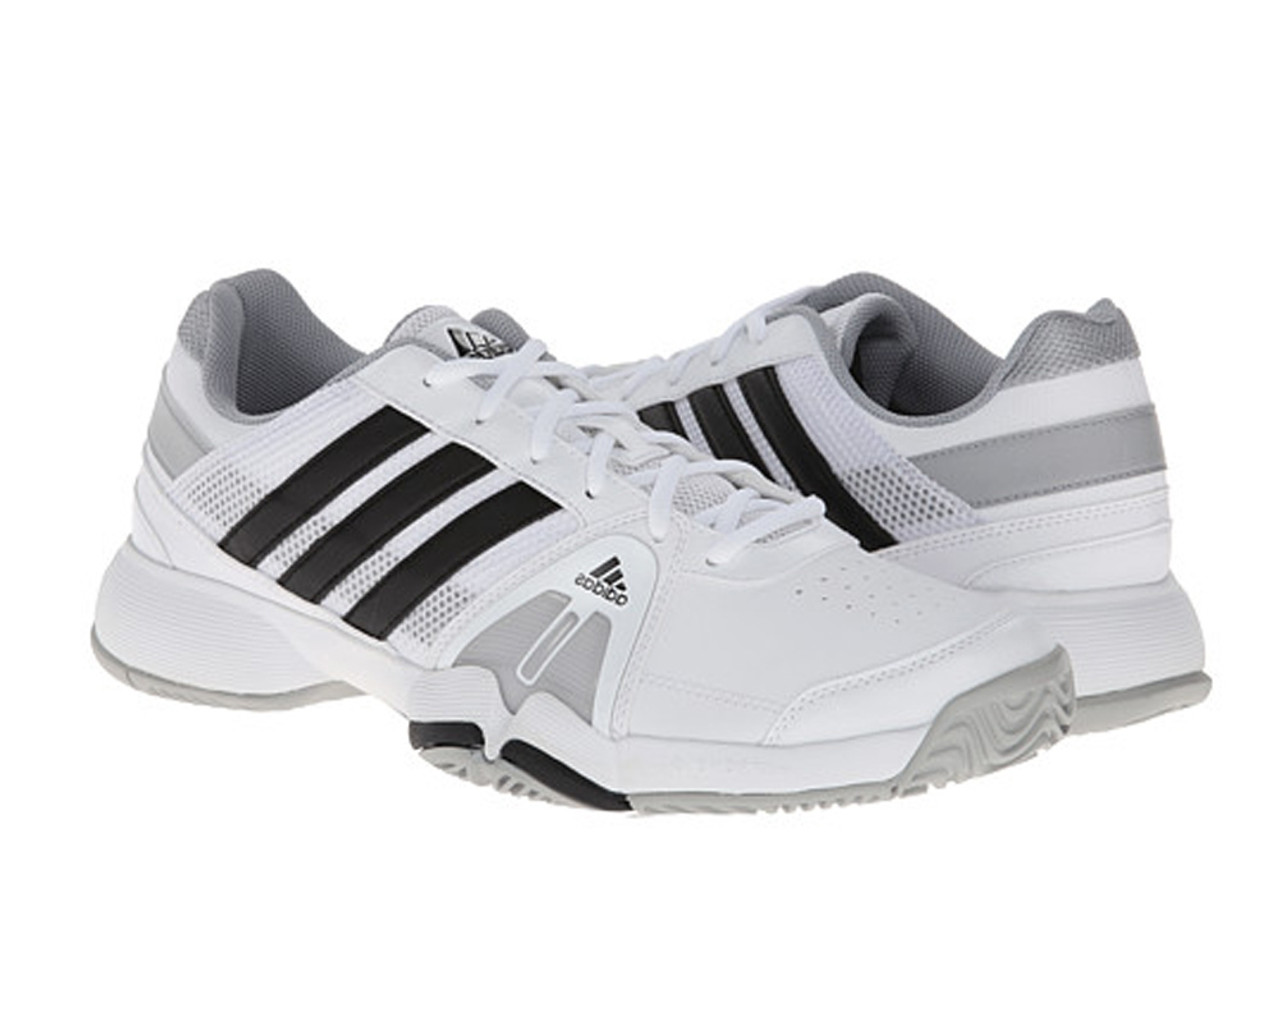 Restringido Lucro Península Adidas Men's Barricade Team 3 Tennis Shoes - White | Discount Adidas Men's  Athletic Shoes & More - Shoolu.com | Shoolu.com